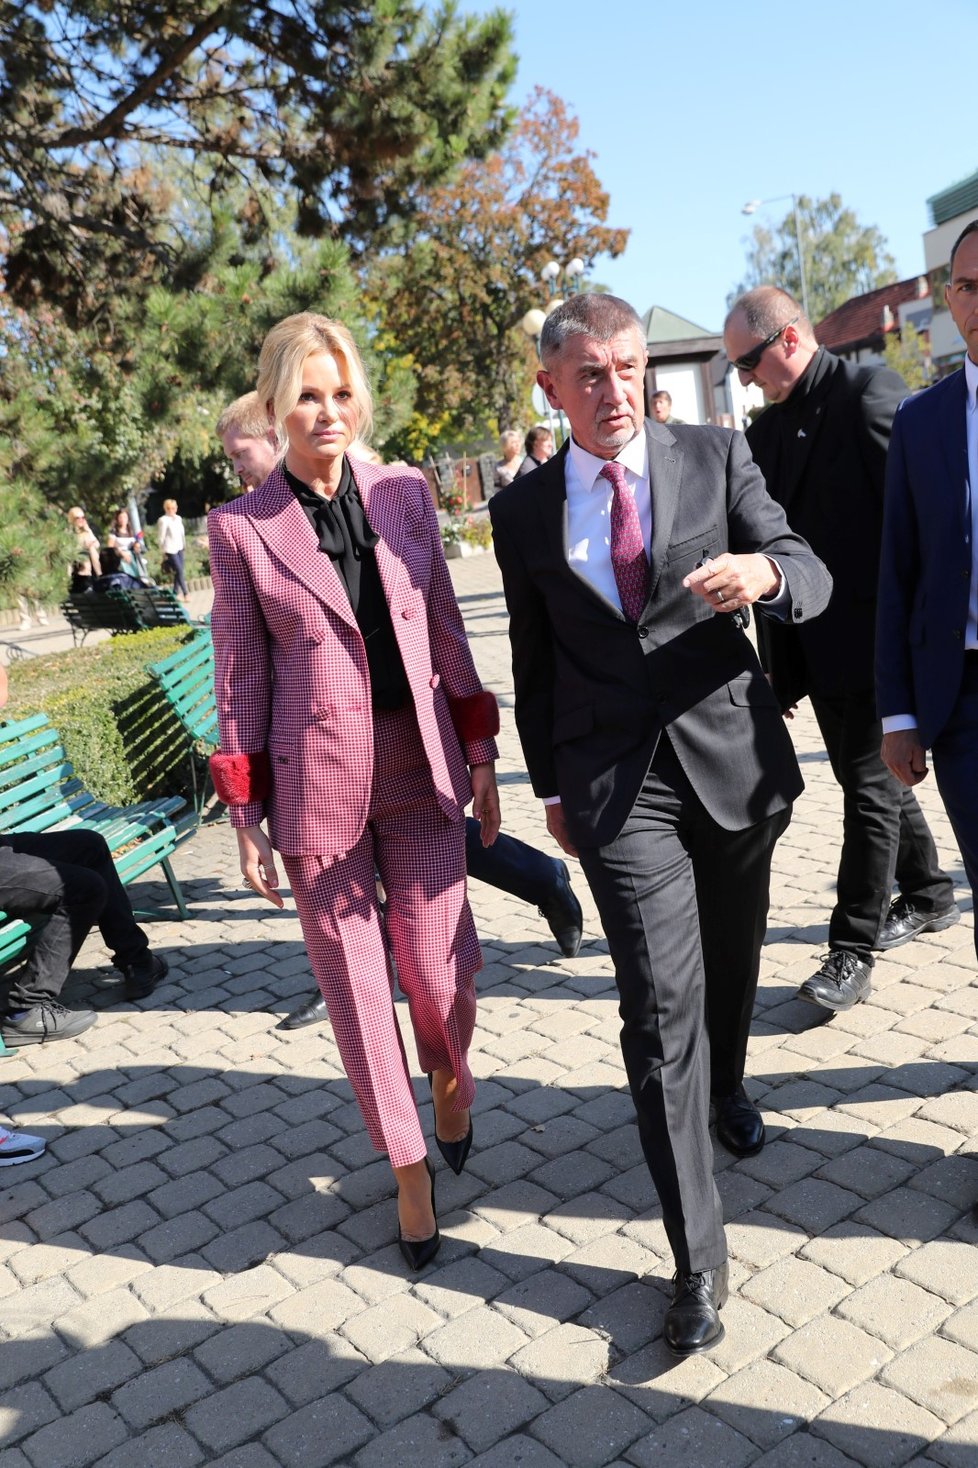 Premiér Andrej Babiš se dostavil společně se svou ženou ke komunálním volbám 2018